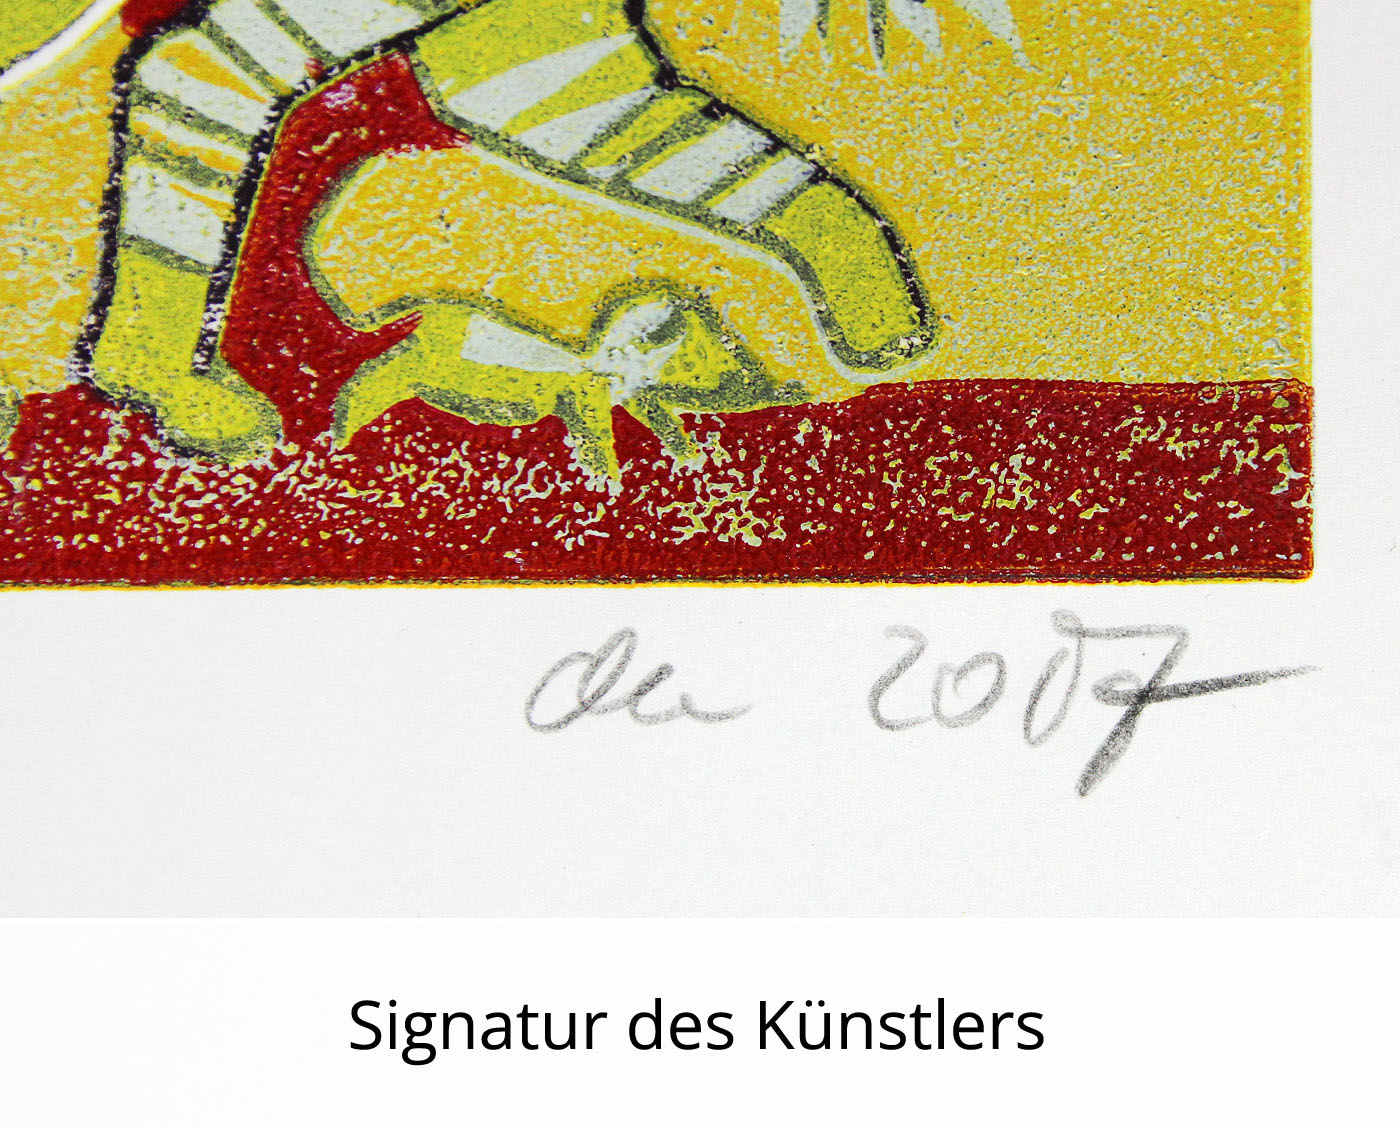 F.O. Haake: "Gemeinsam - Blatt 06/22", originale Grafik/serielles Unikat, mehrfarbiger Linoldruck